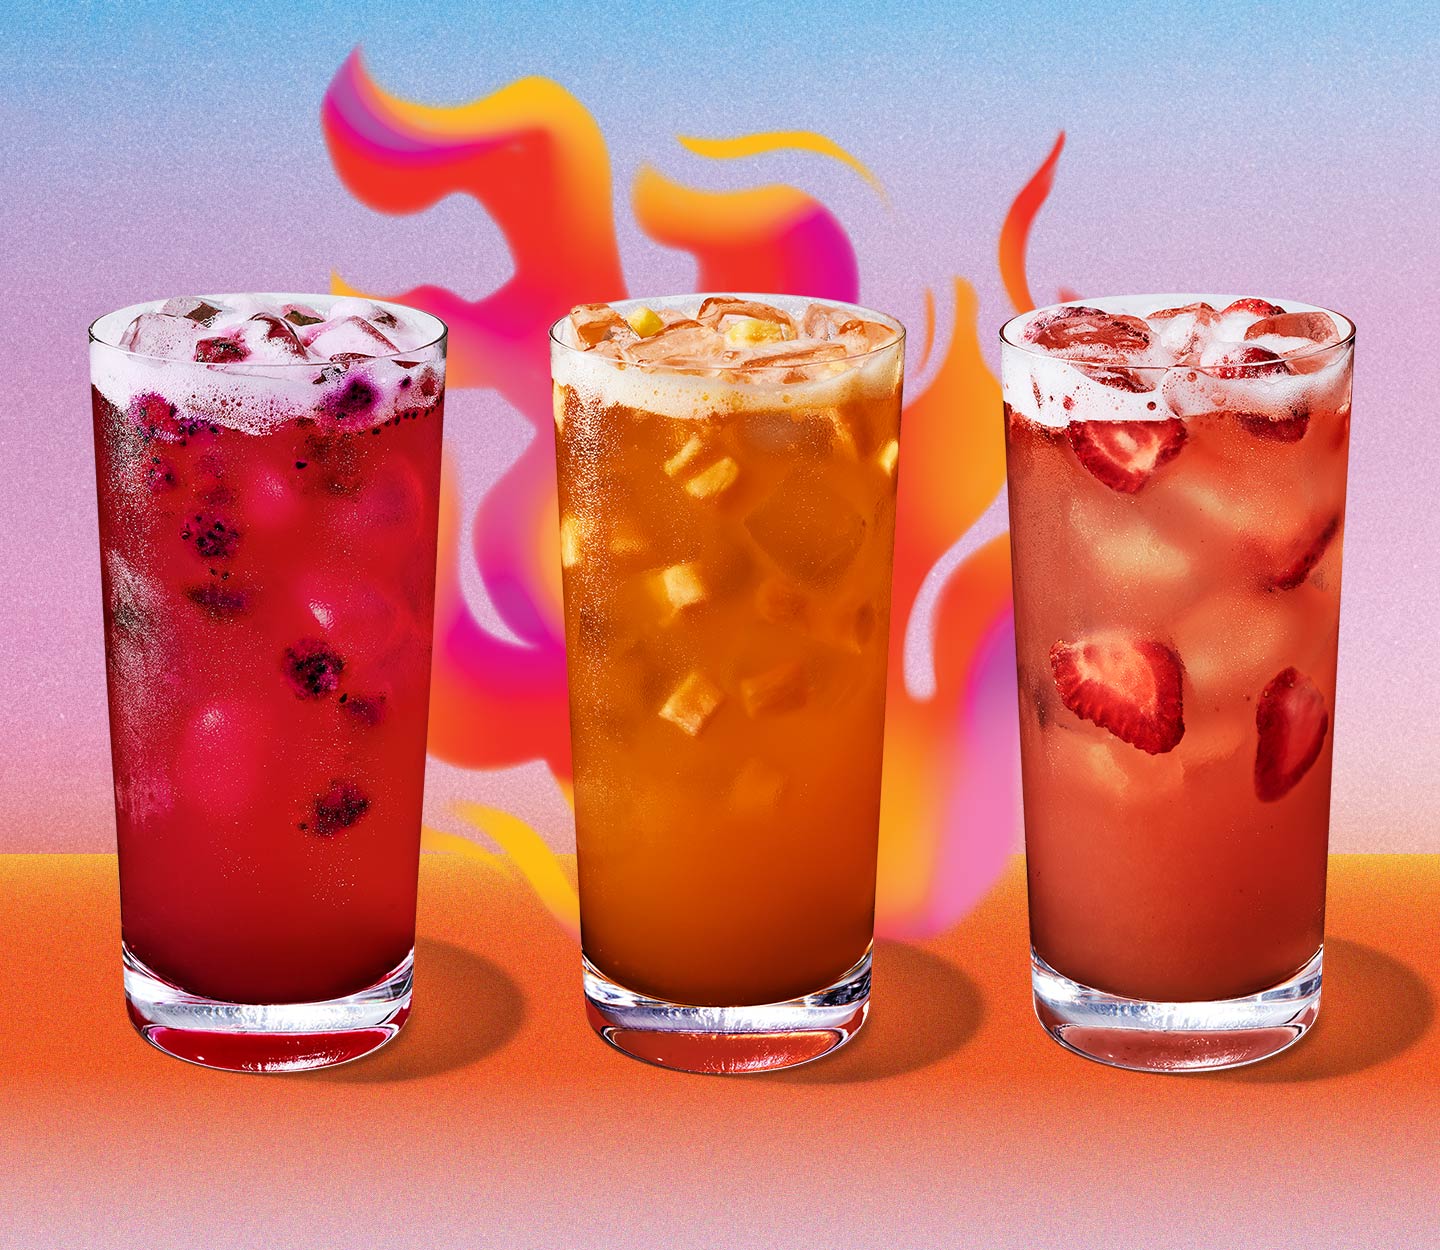 Trois boissons froides rouges contenant des morceaux de fruits. La teinte de rouge varie d’une boisson à l’autre et passe du rose à l’orange.